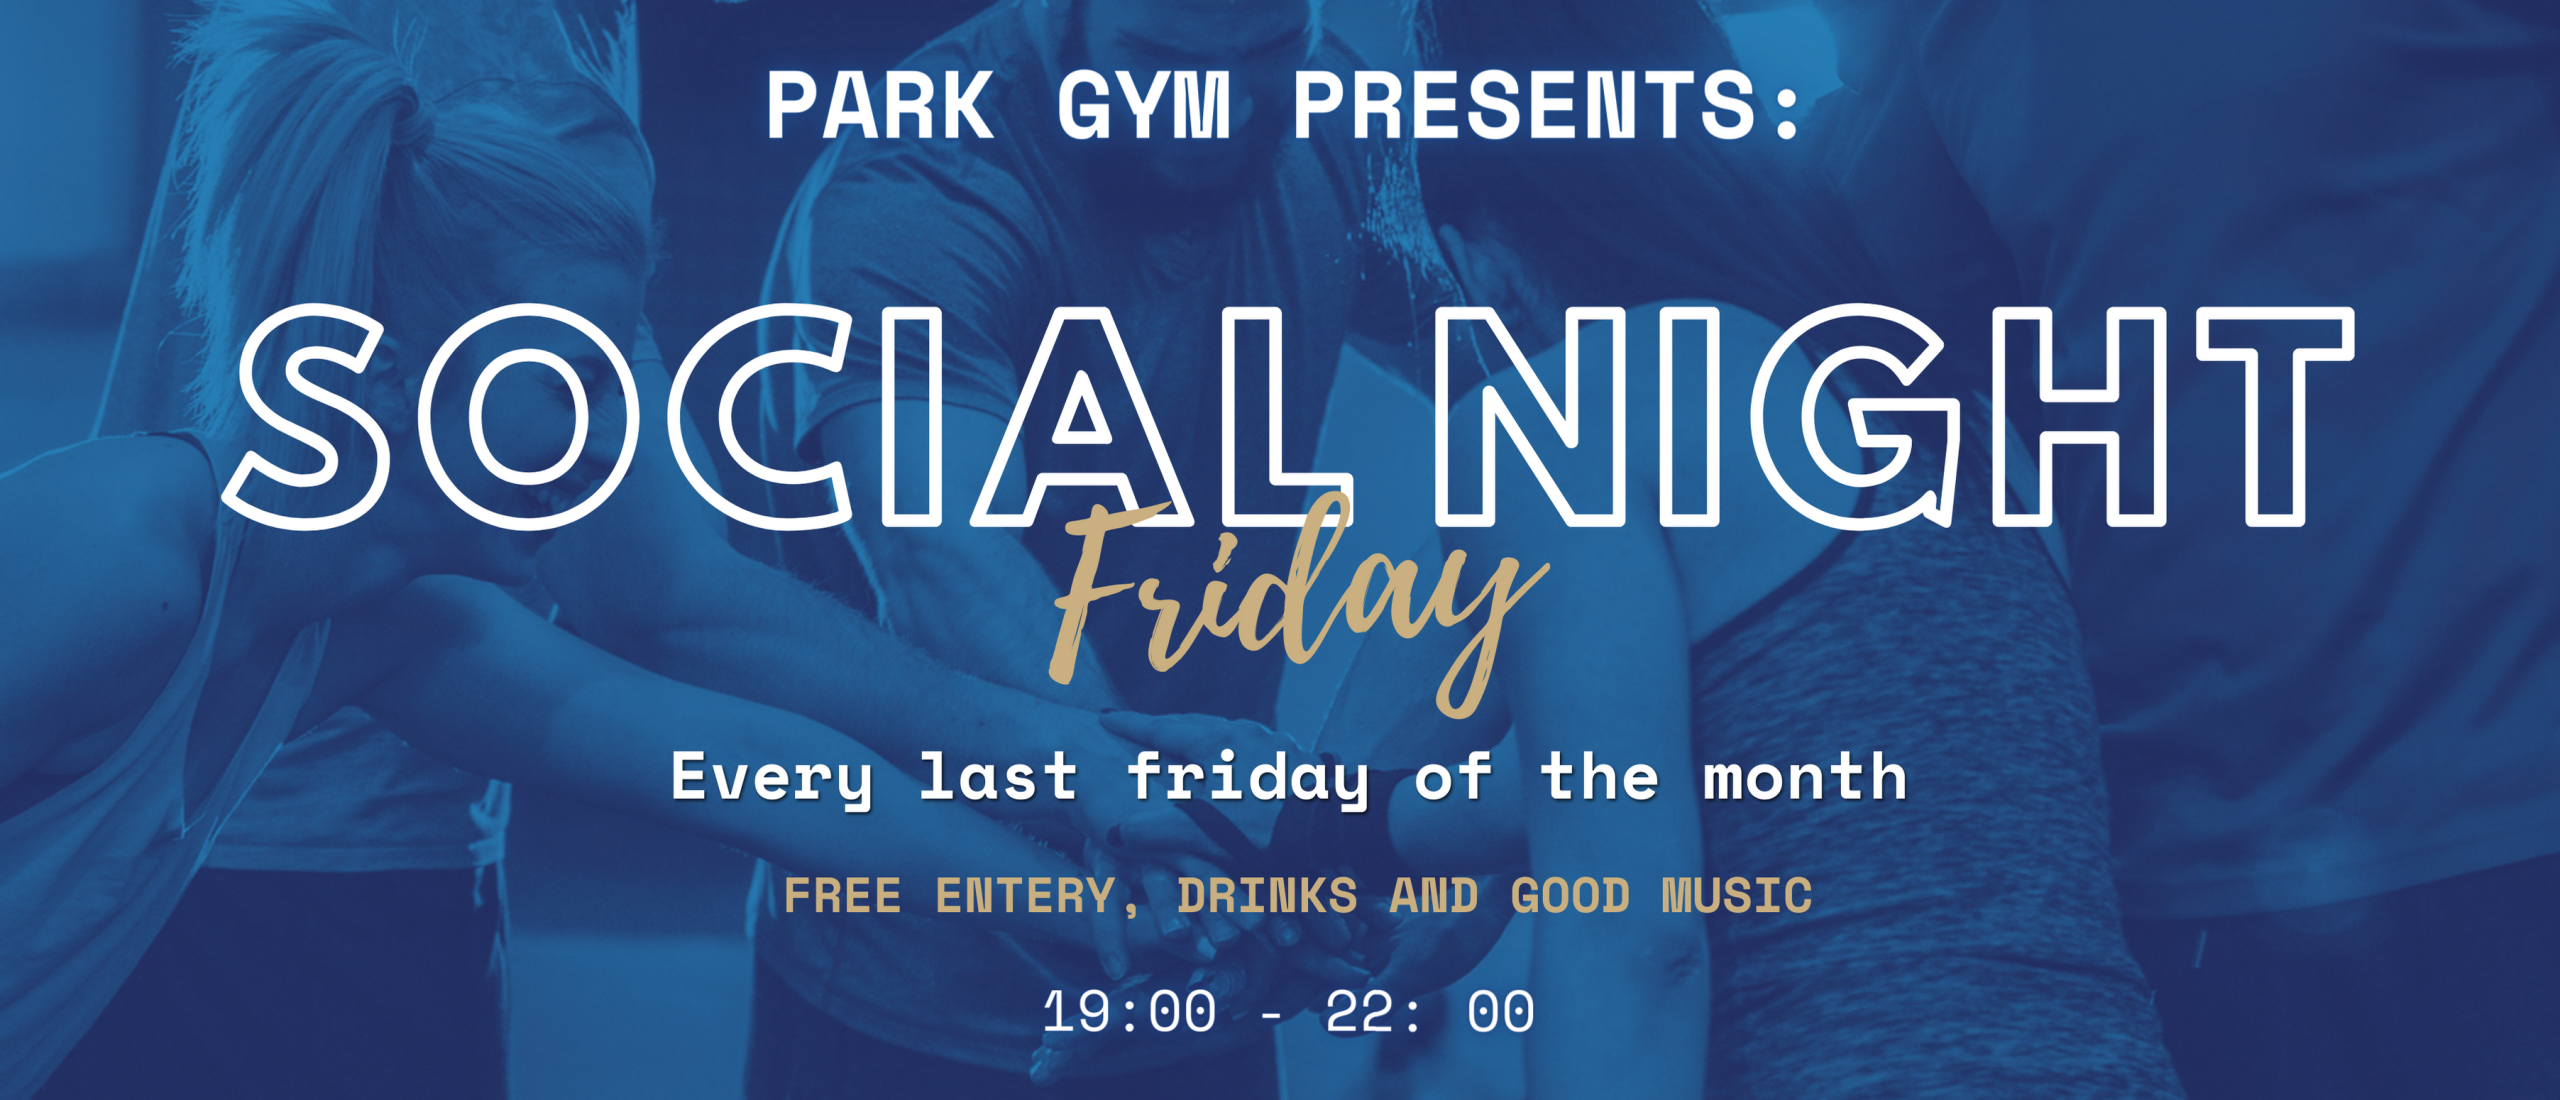 Social night at Park Gym